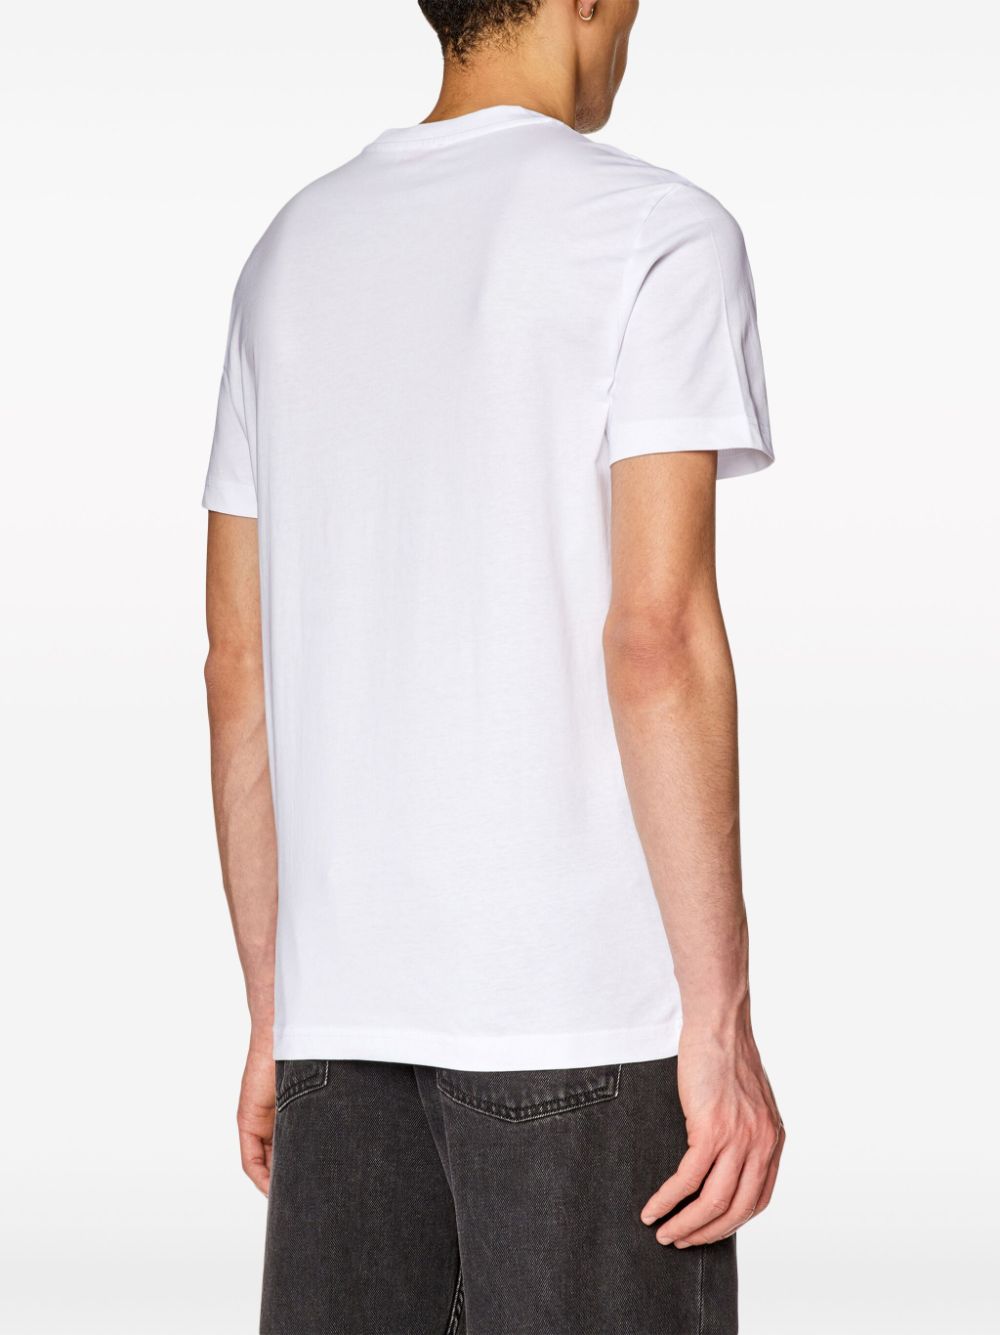 White logotype t-shirt